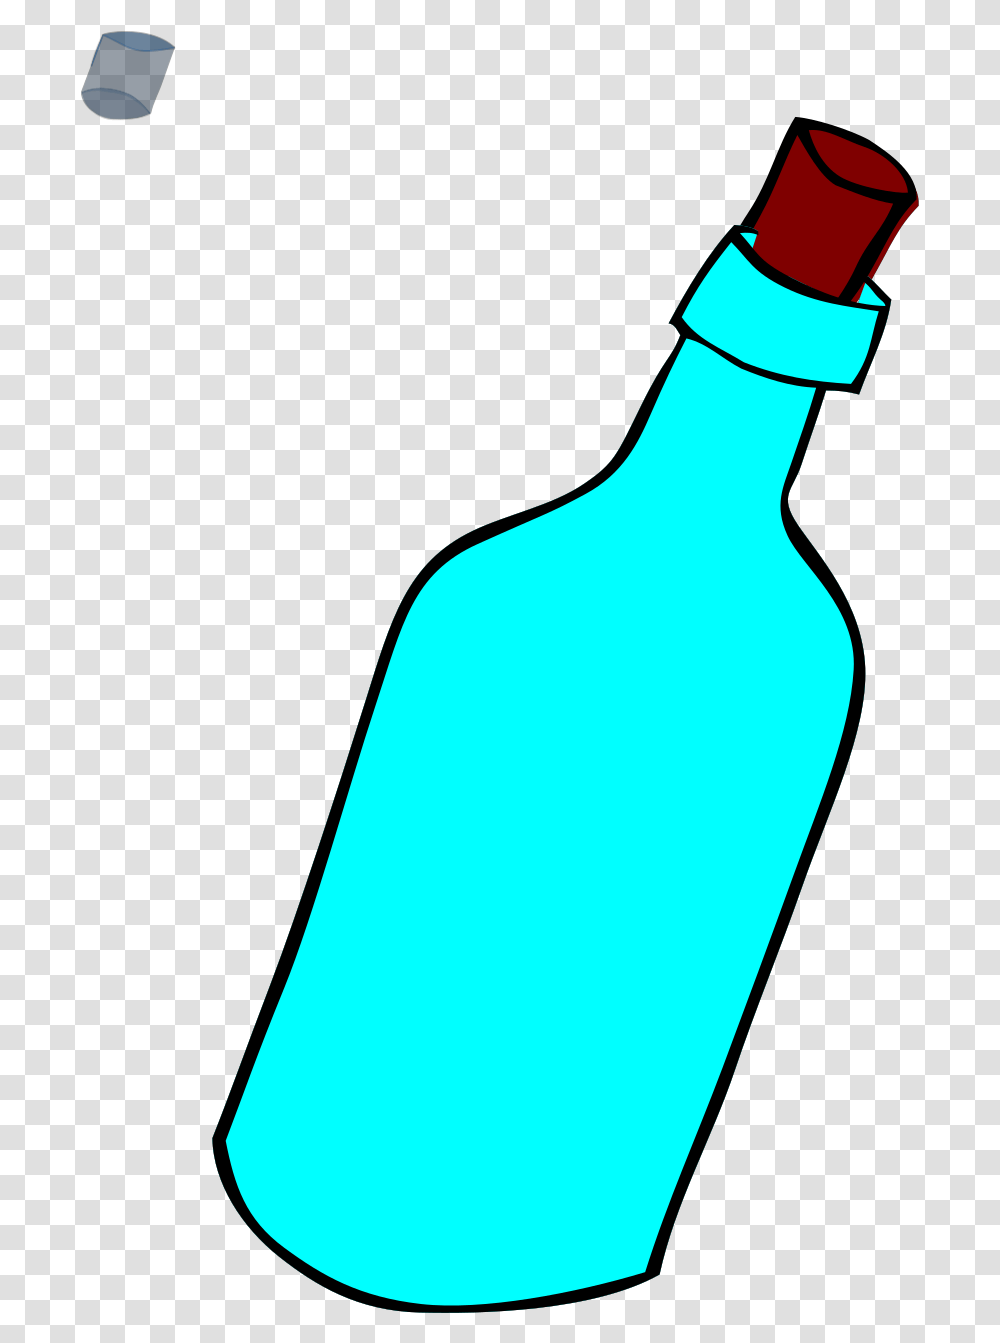 Glass Blue Bottle Full Of Water Svg Vector Glass Bottle, Beverage, Drink, Alcohol, Wine Transparent Png